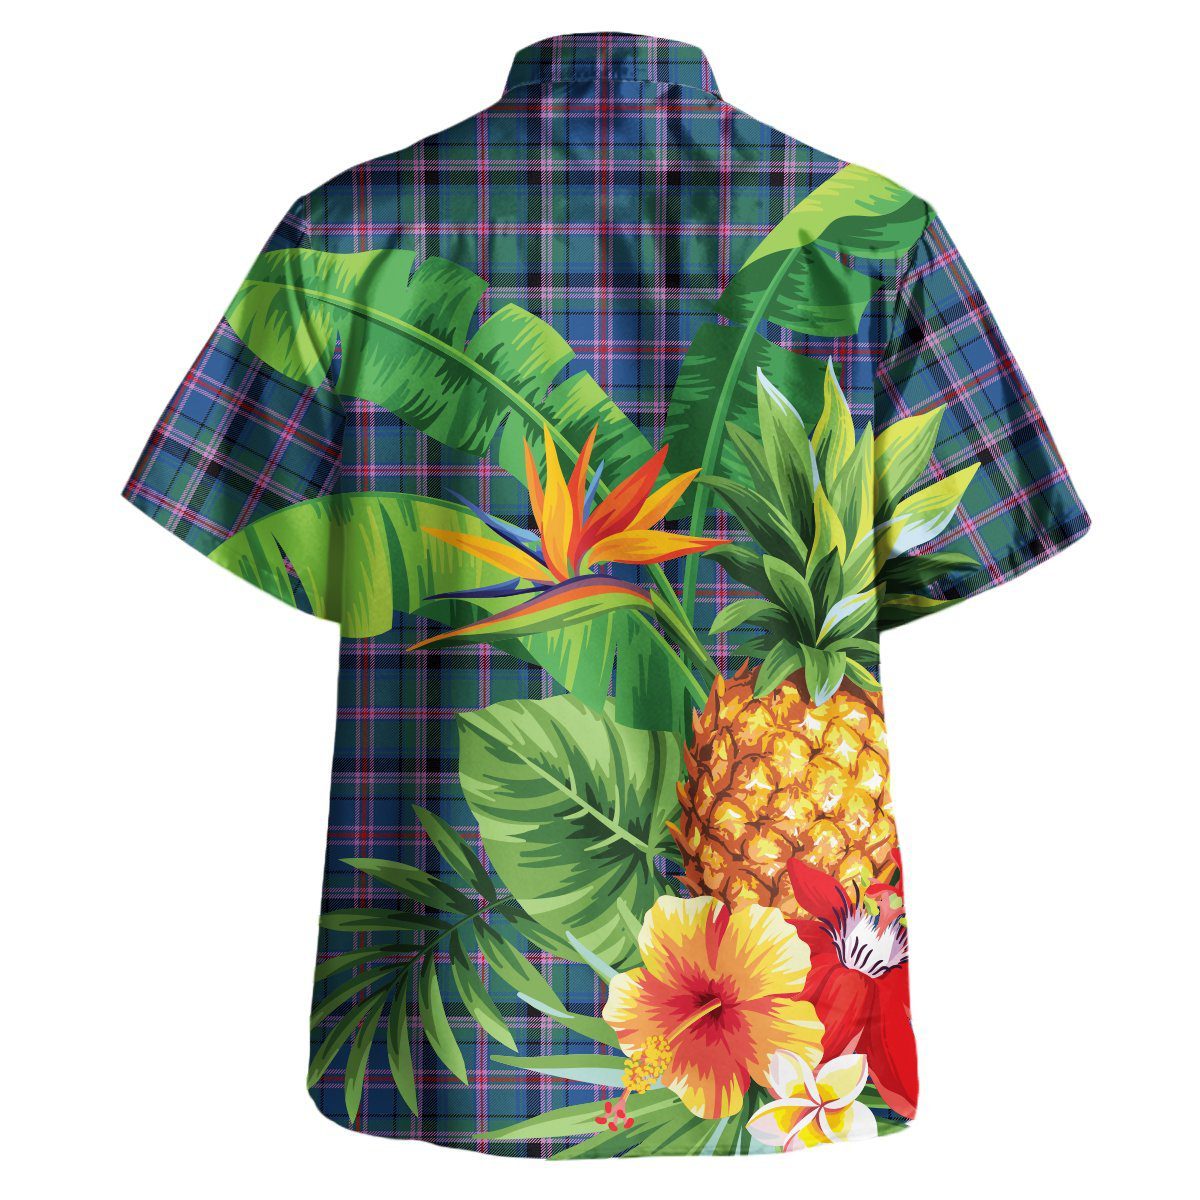 Cooper Ancient Tartan Aloha Shirt version 2